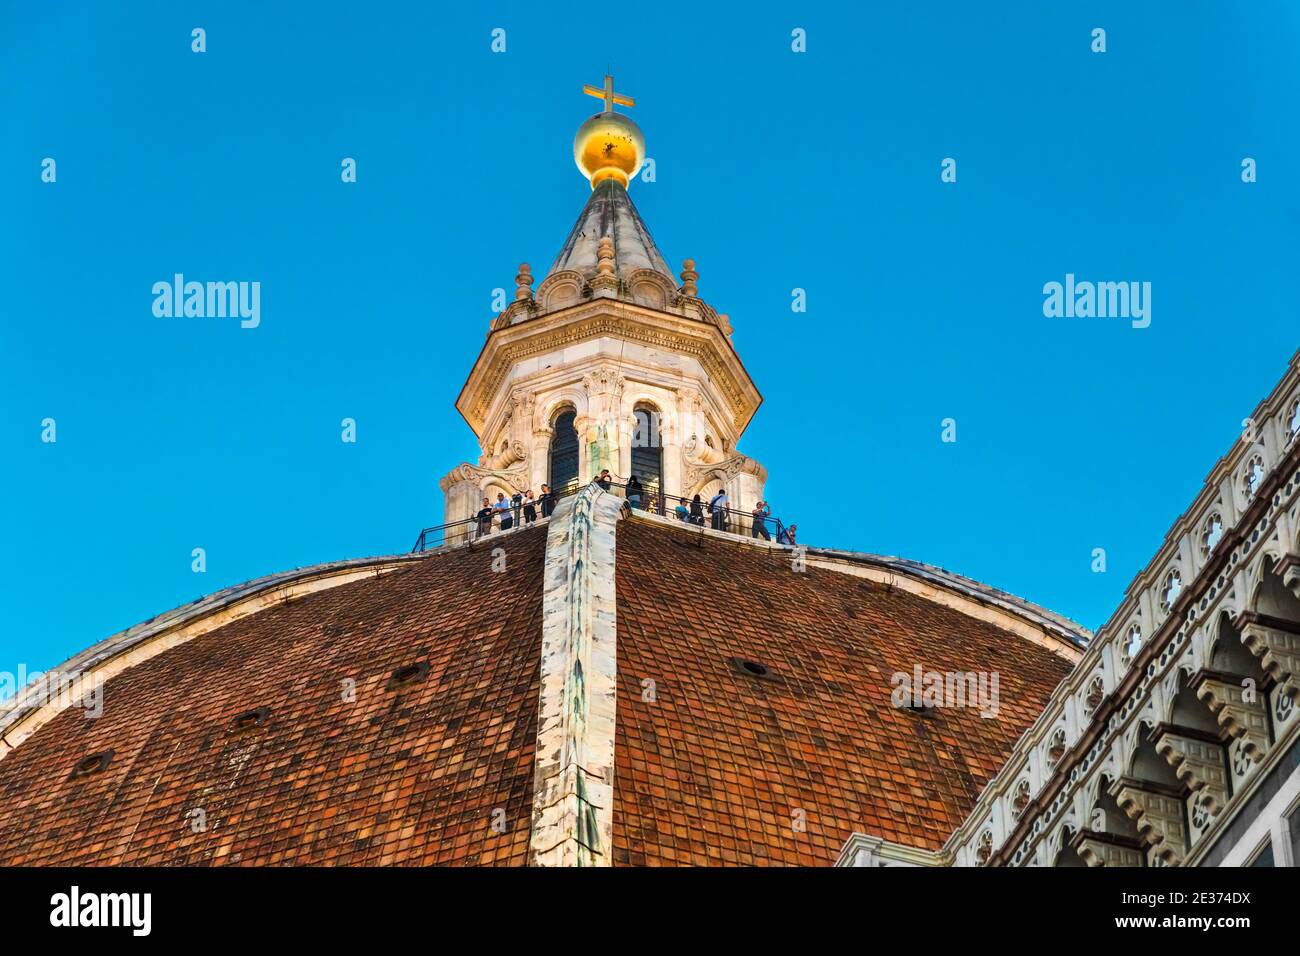 Belle vue rapprochée du dôme de la cathédrale de Florence avec la coupole au-dessus de laquelle les visiteurs se tiennent. La coupole, couronnée d'une boule de cuivre dorée... Banque D'Images